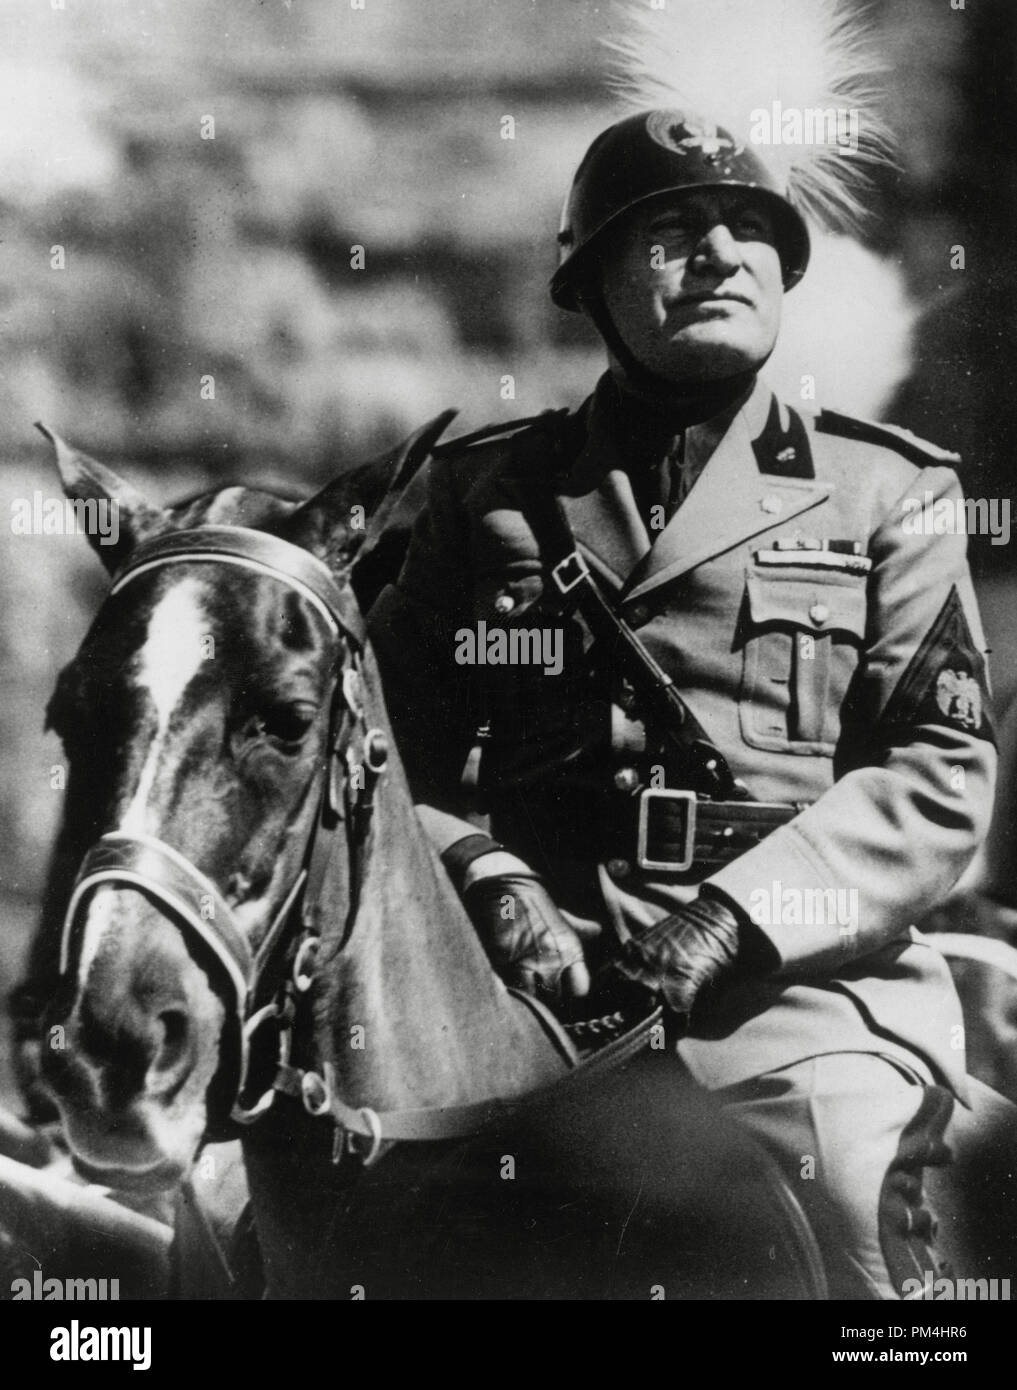 Italian dictator Benito Mussolini in Uniform circa 1934.  File Reference # 1003 394THA Stock Photo